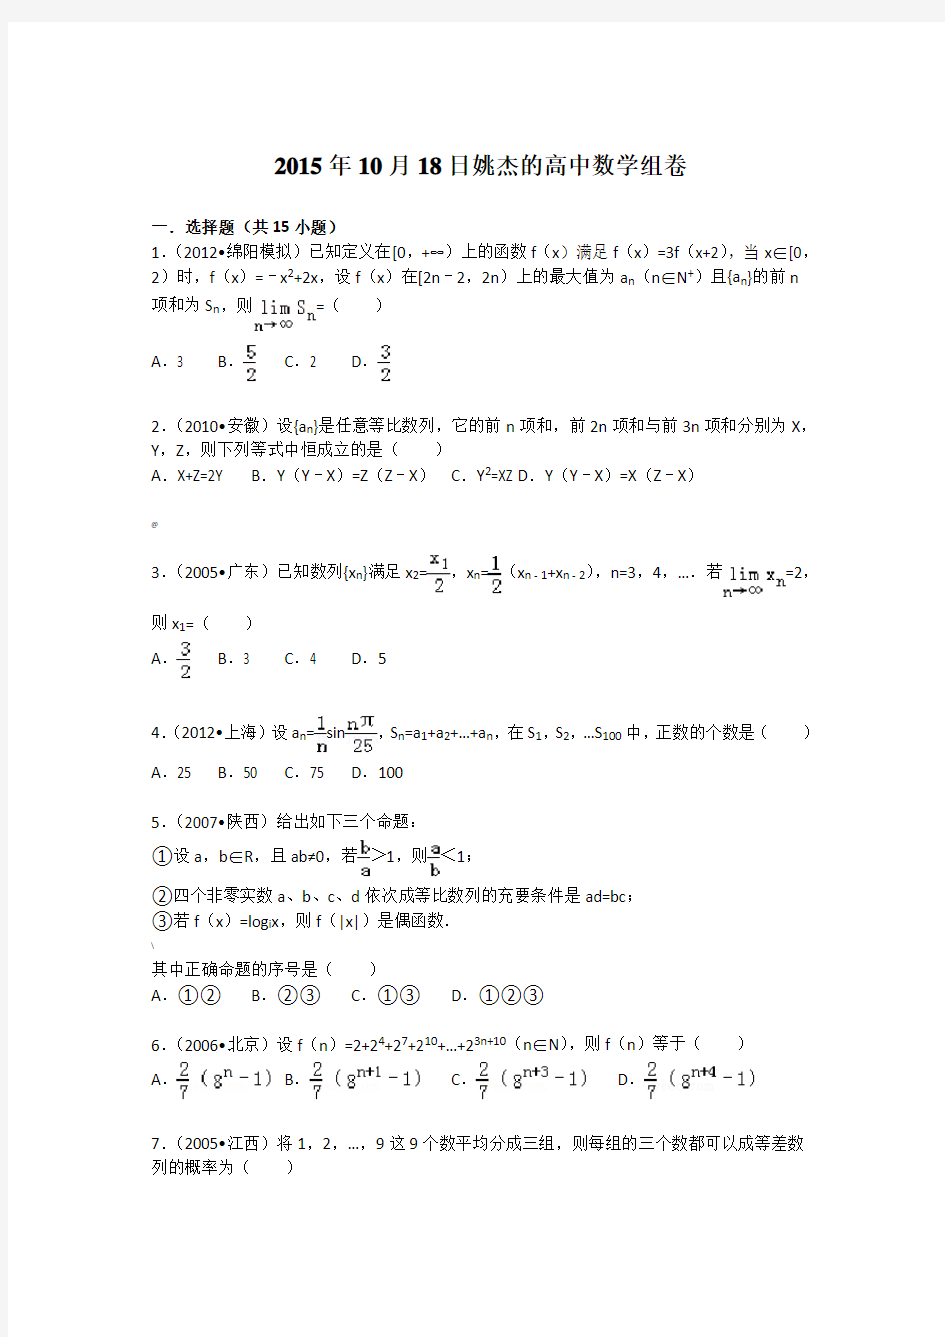 高中数学经典高考难题集锦(解析版)(9)